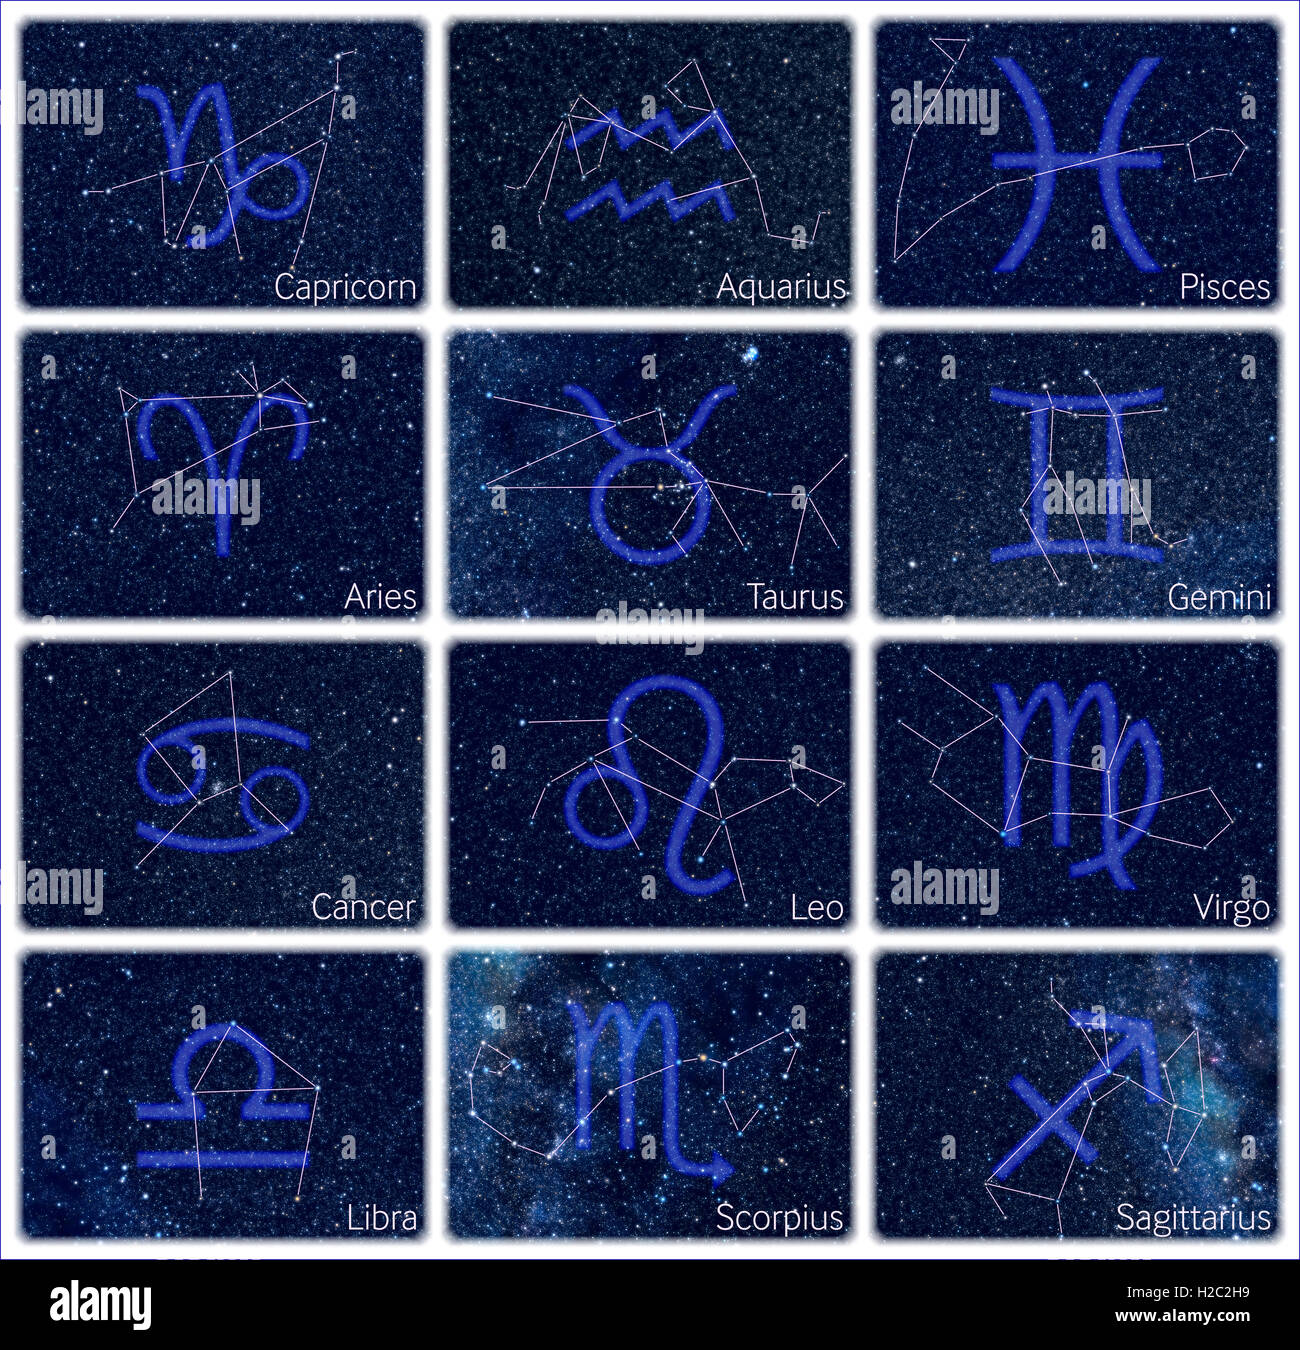 12 images de constellations de zodiaque disposés en 12 panneaux-photo. Photos de sky regarder exactement comme sur le véritable ciel nocturne Banque D'Images